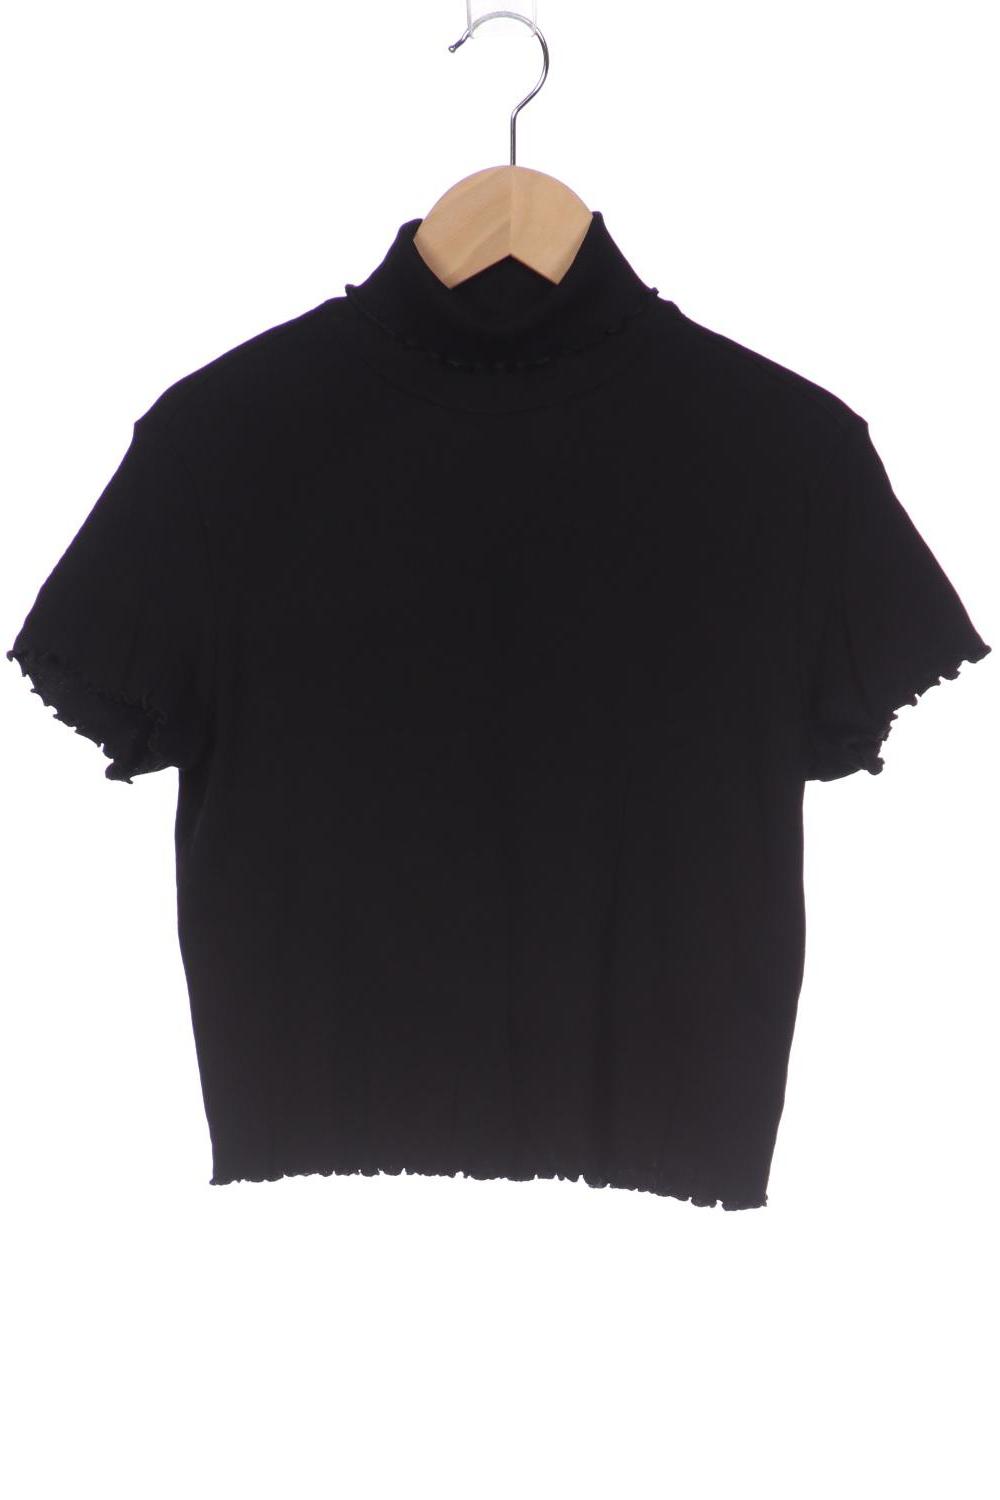 Monki Damen T-Shirt, schwarz, Gr. 38 von Monki